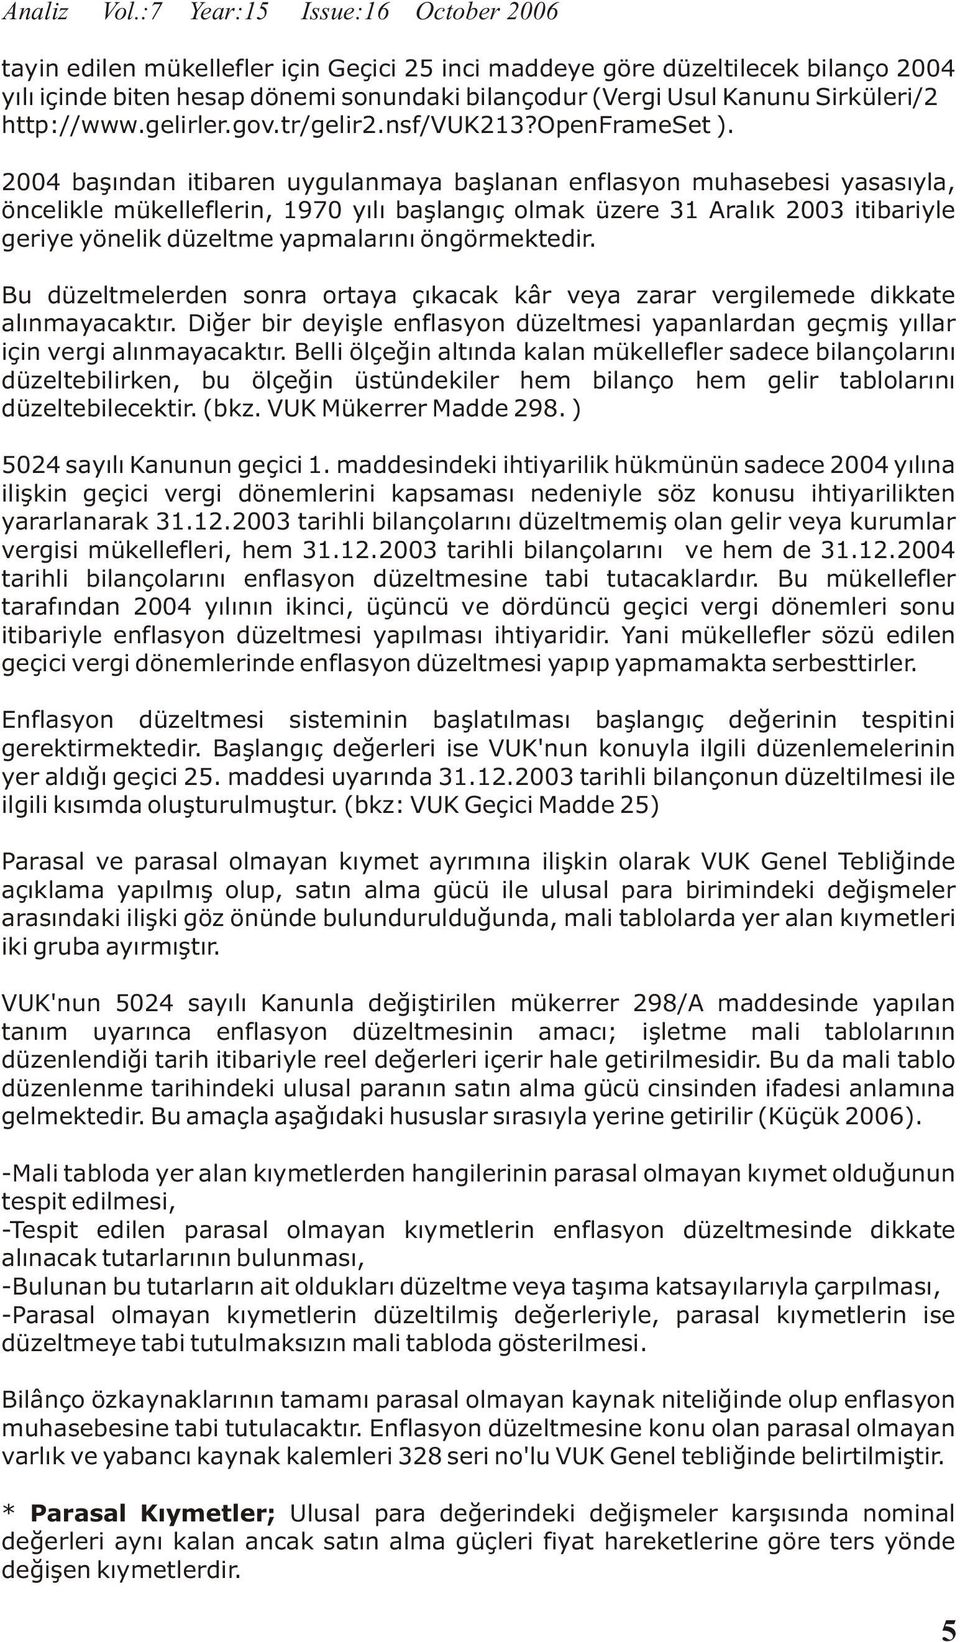 http://www.gelirler.gov.tr/gelir2.nsf/vuk213?openframeset ).